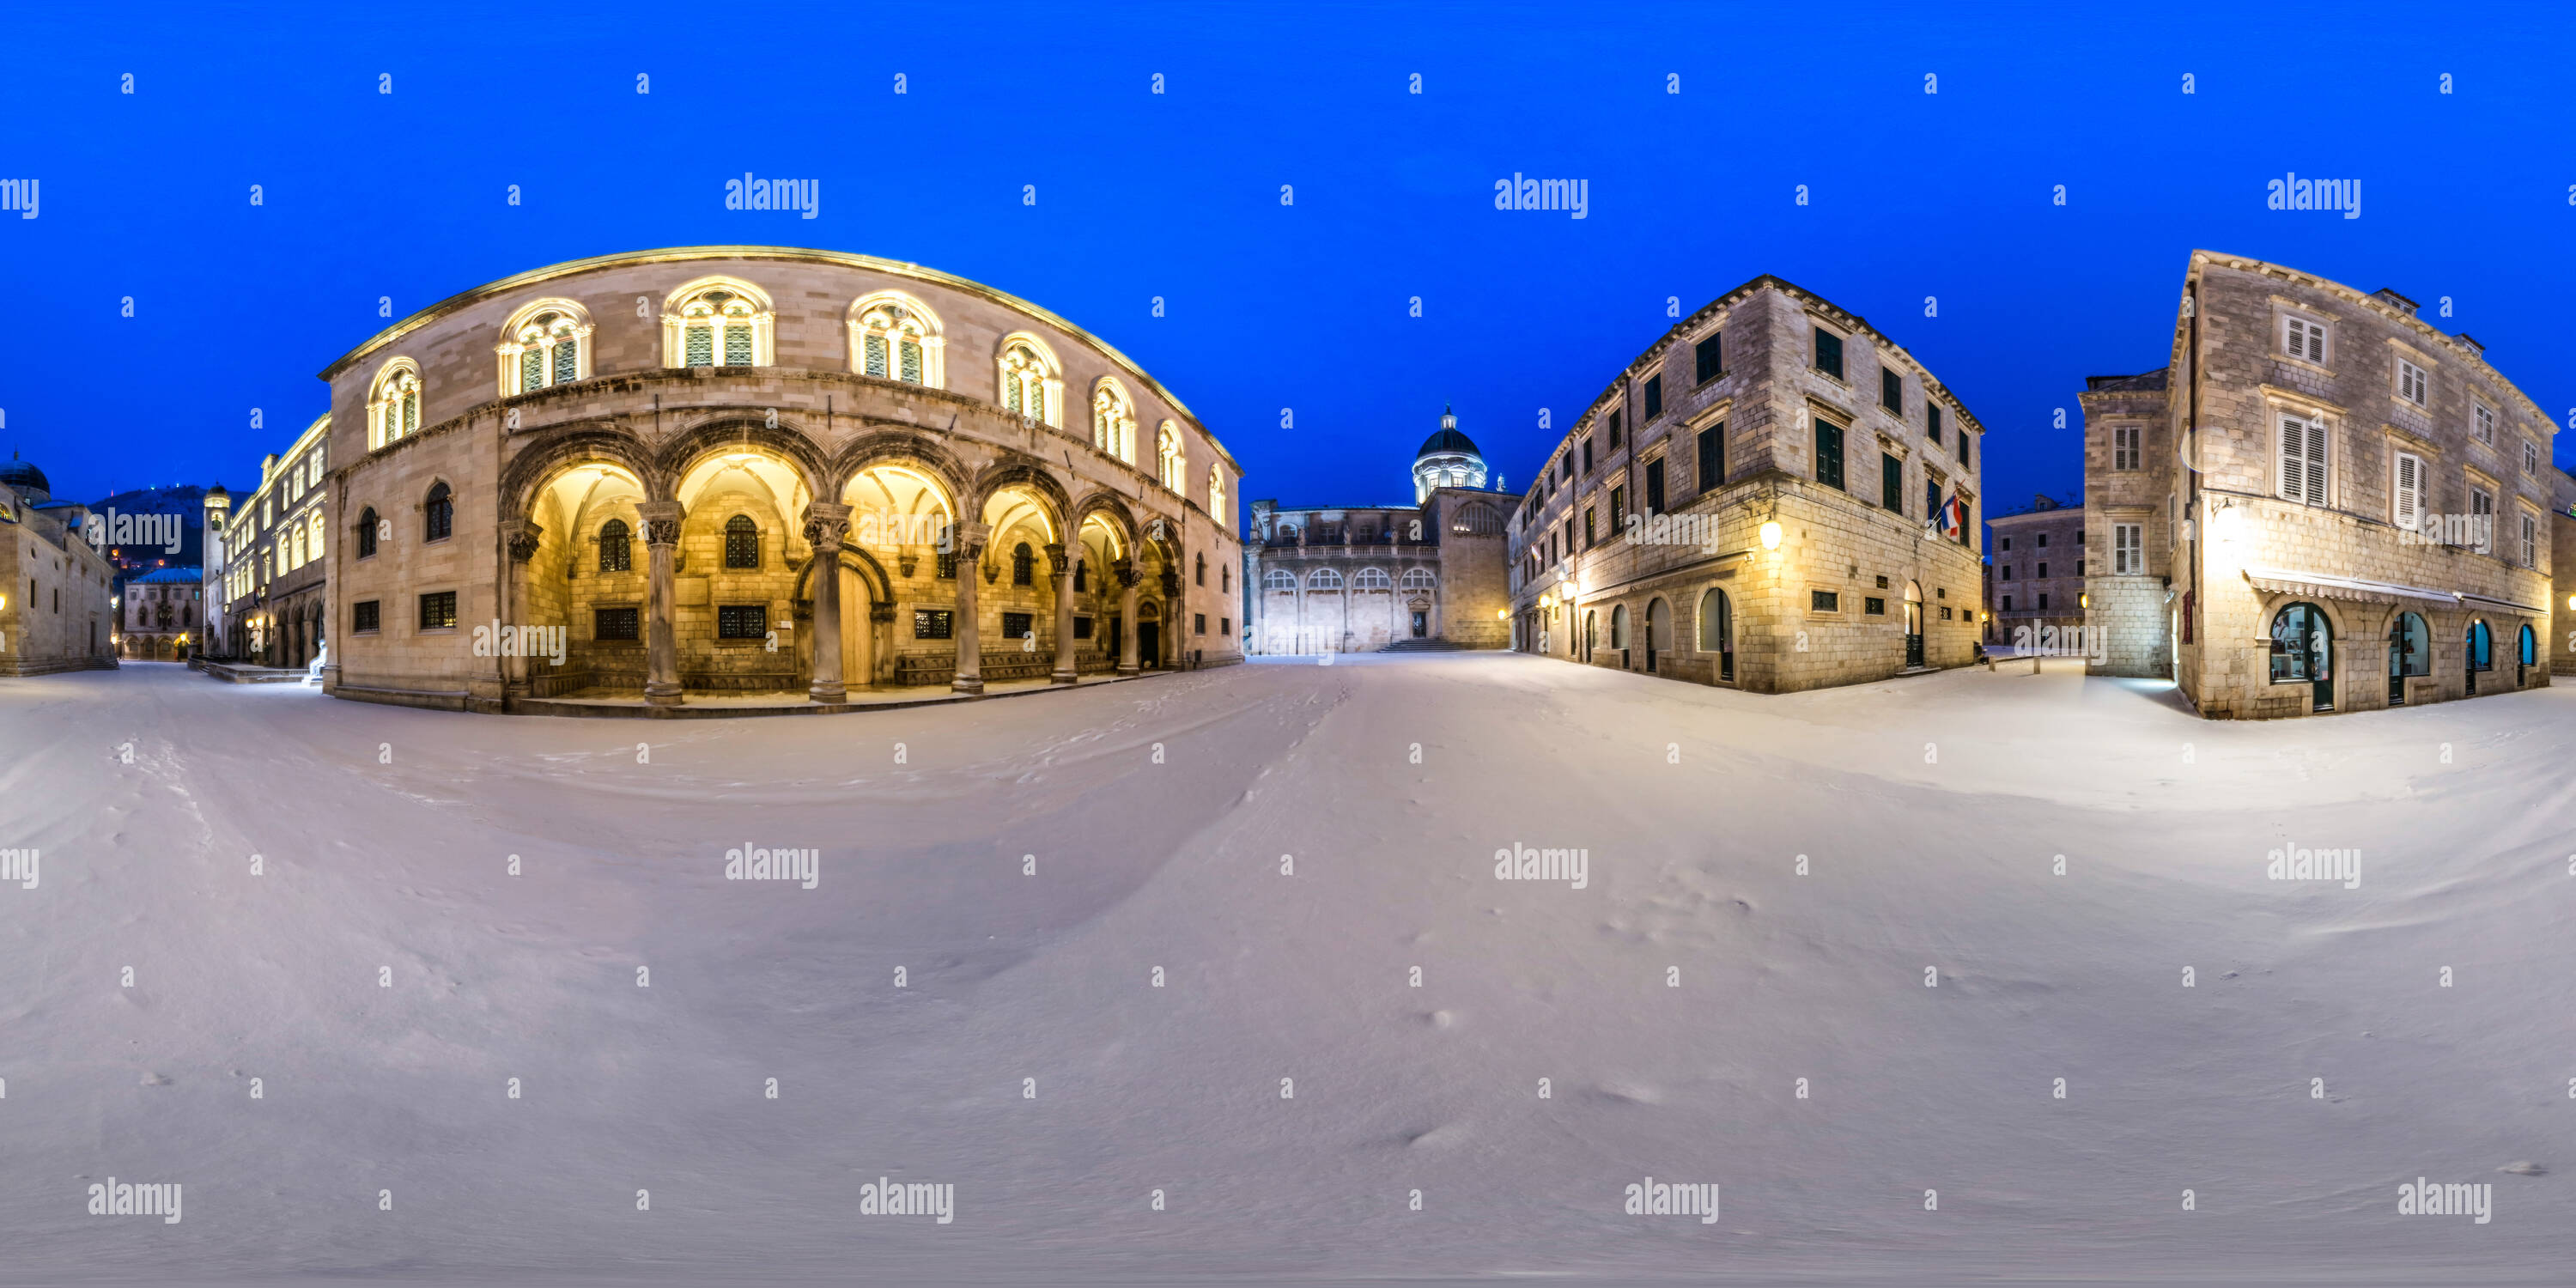 Visualizzazione panoramica a 360 gradi di Snowy Palazzo del Rettore, Dubrovnik, Croazia, 2017.